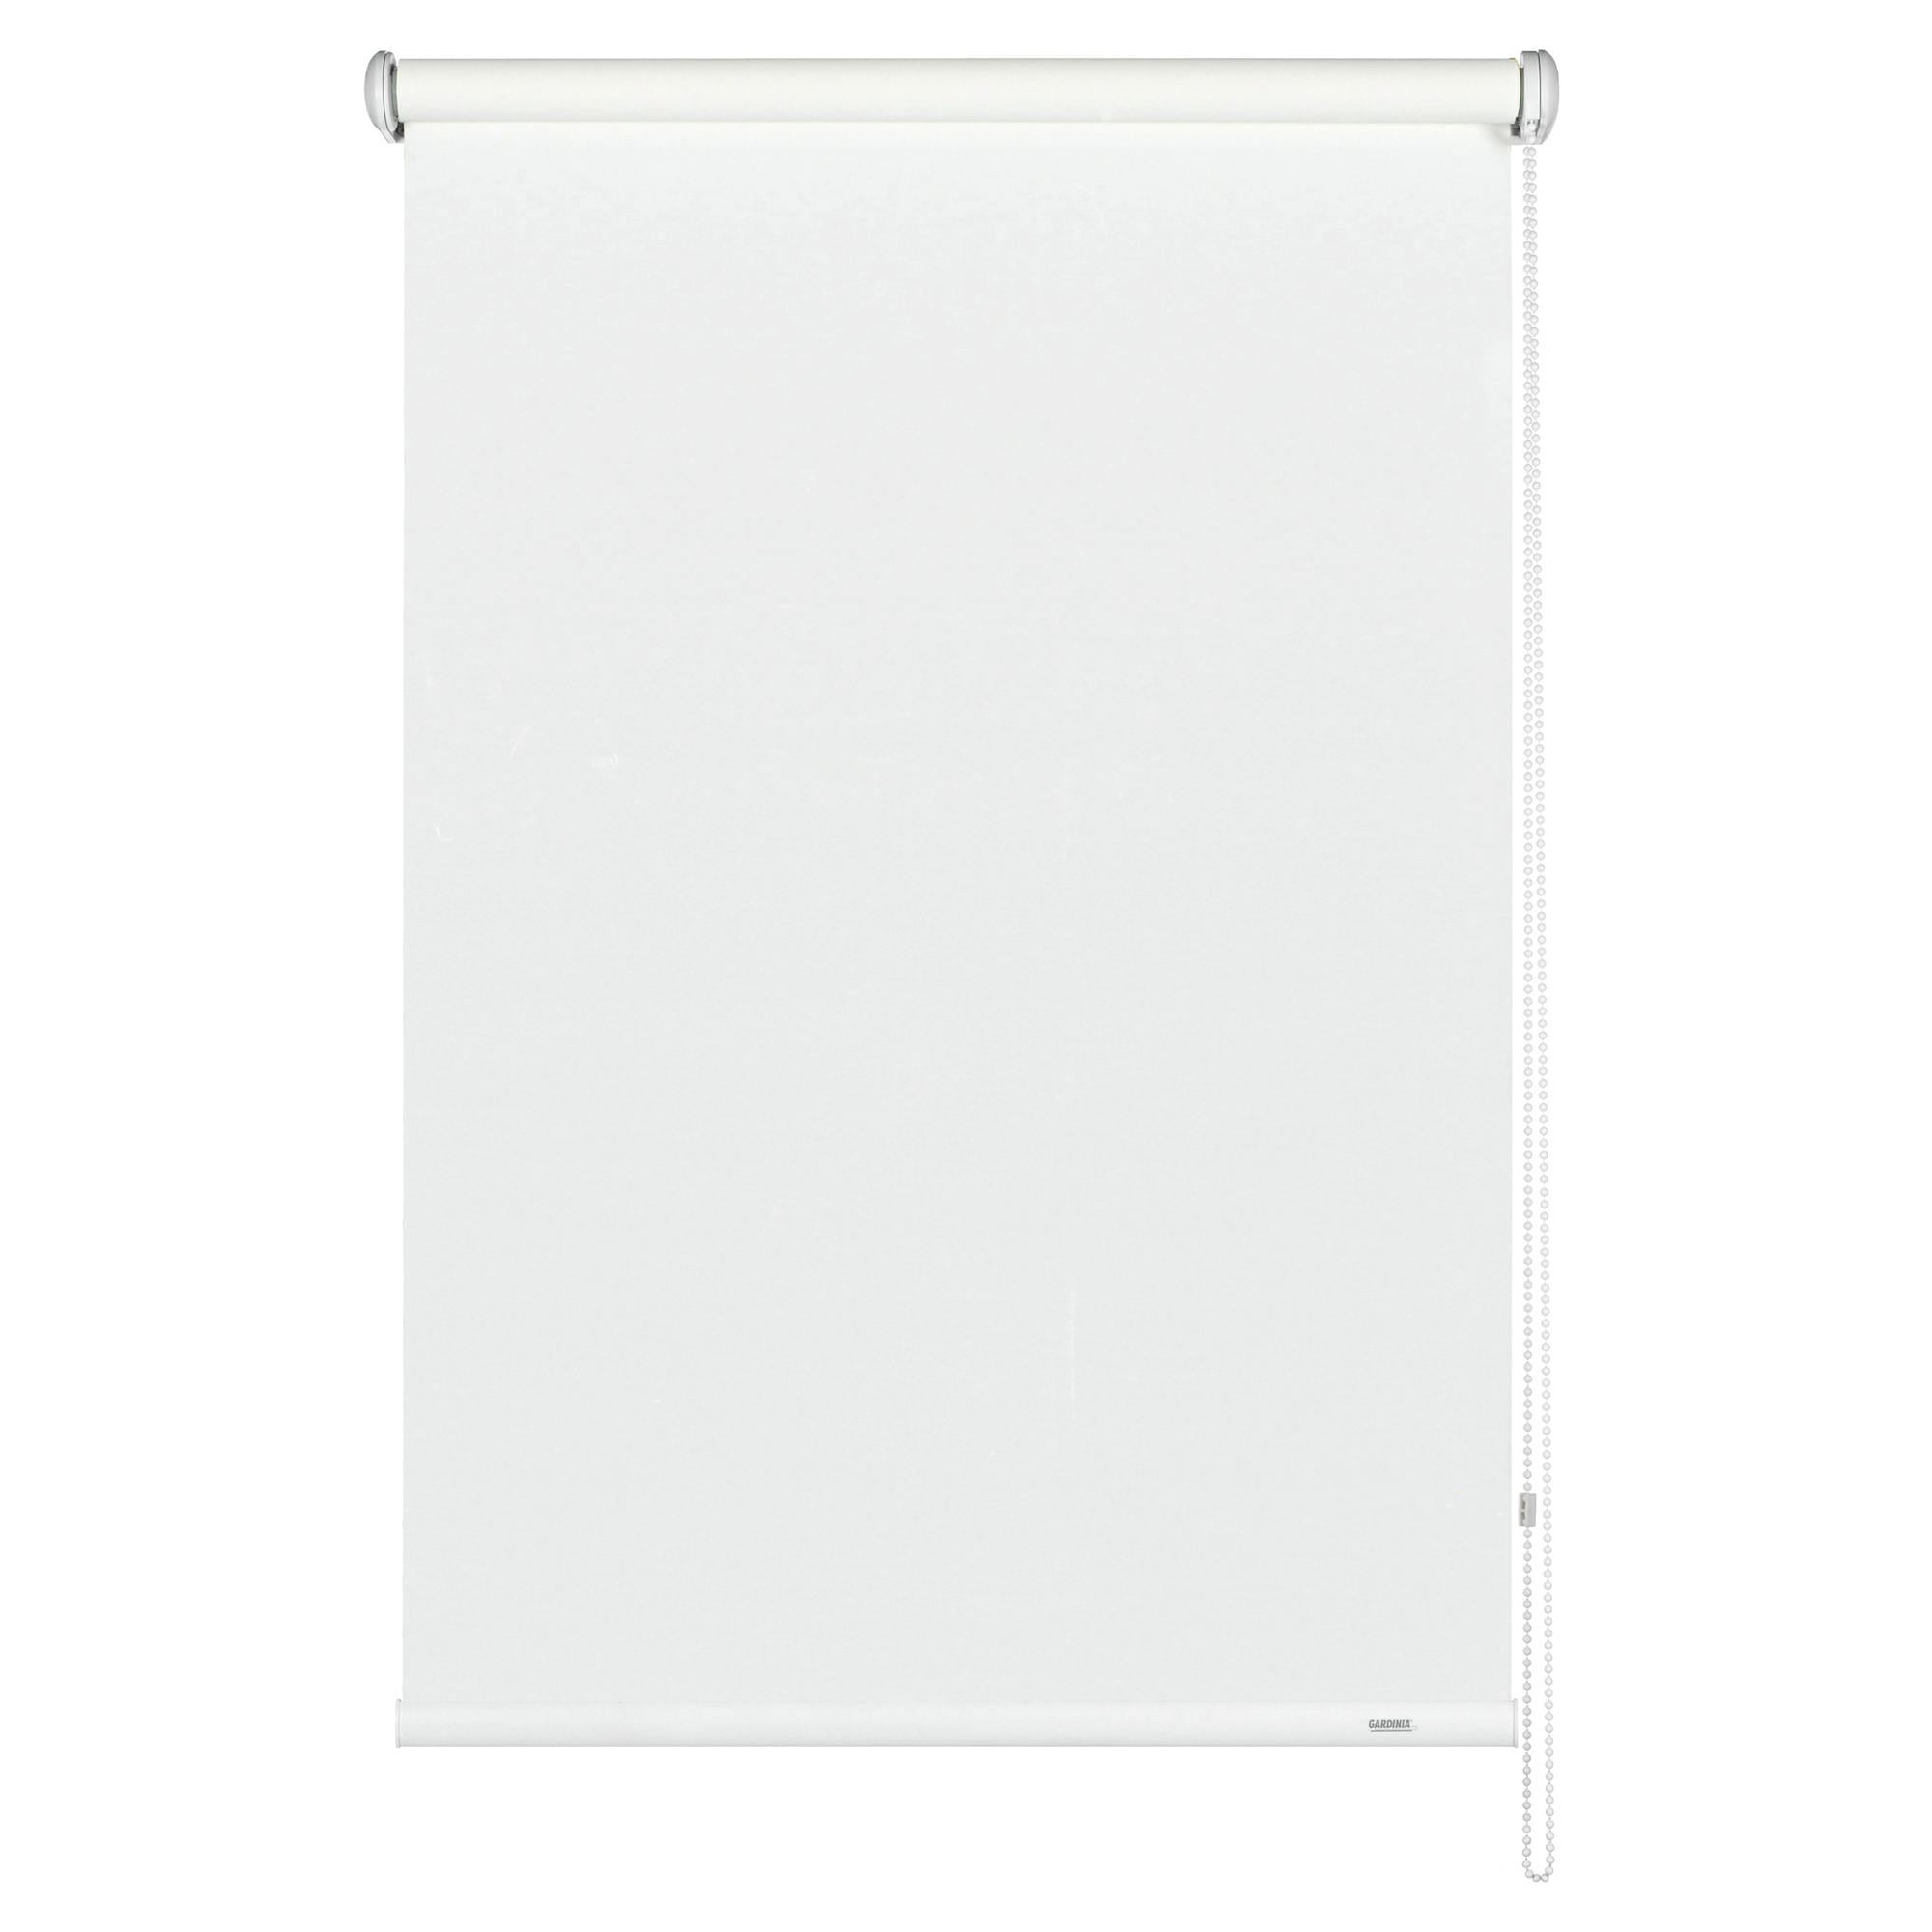 Seitenzug-Rollo 'Lichtdurchlässig' weiß 92 x 180 cm + product picture